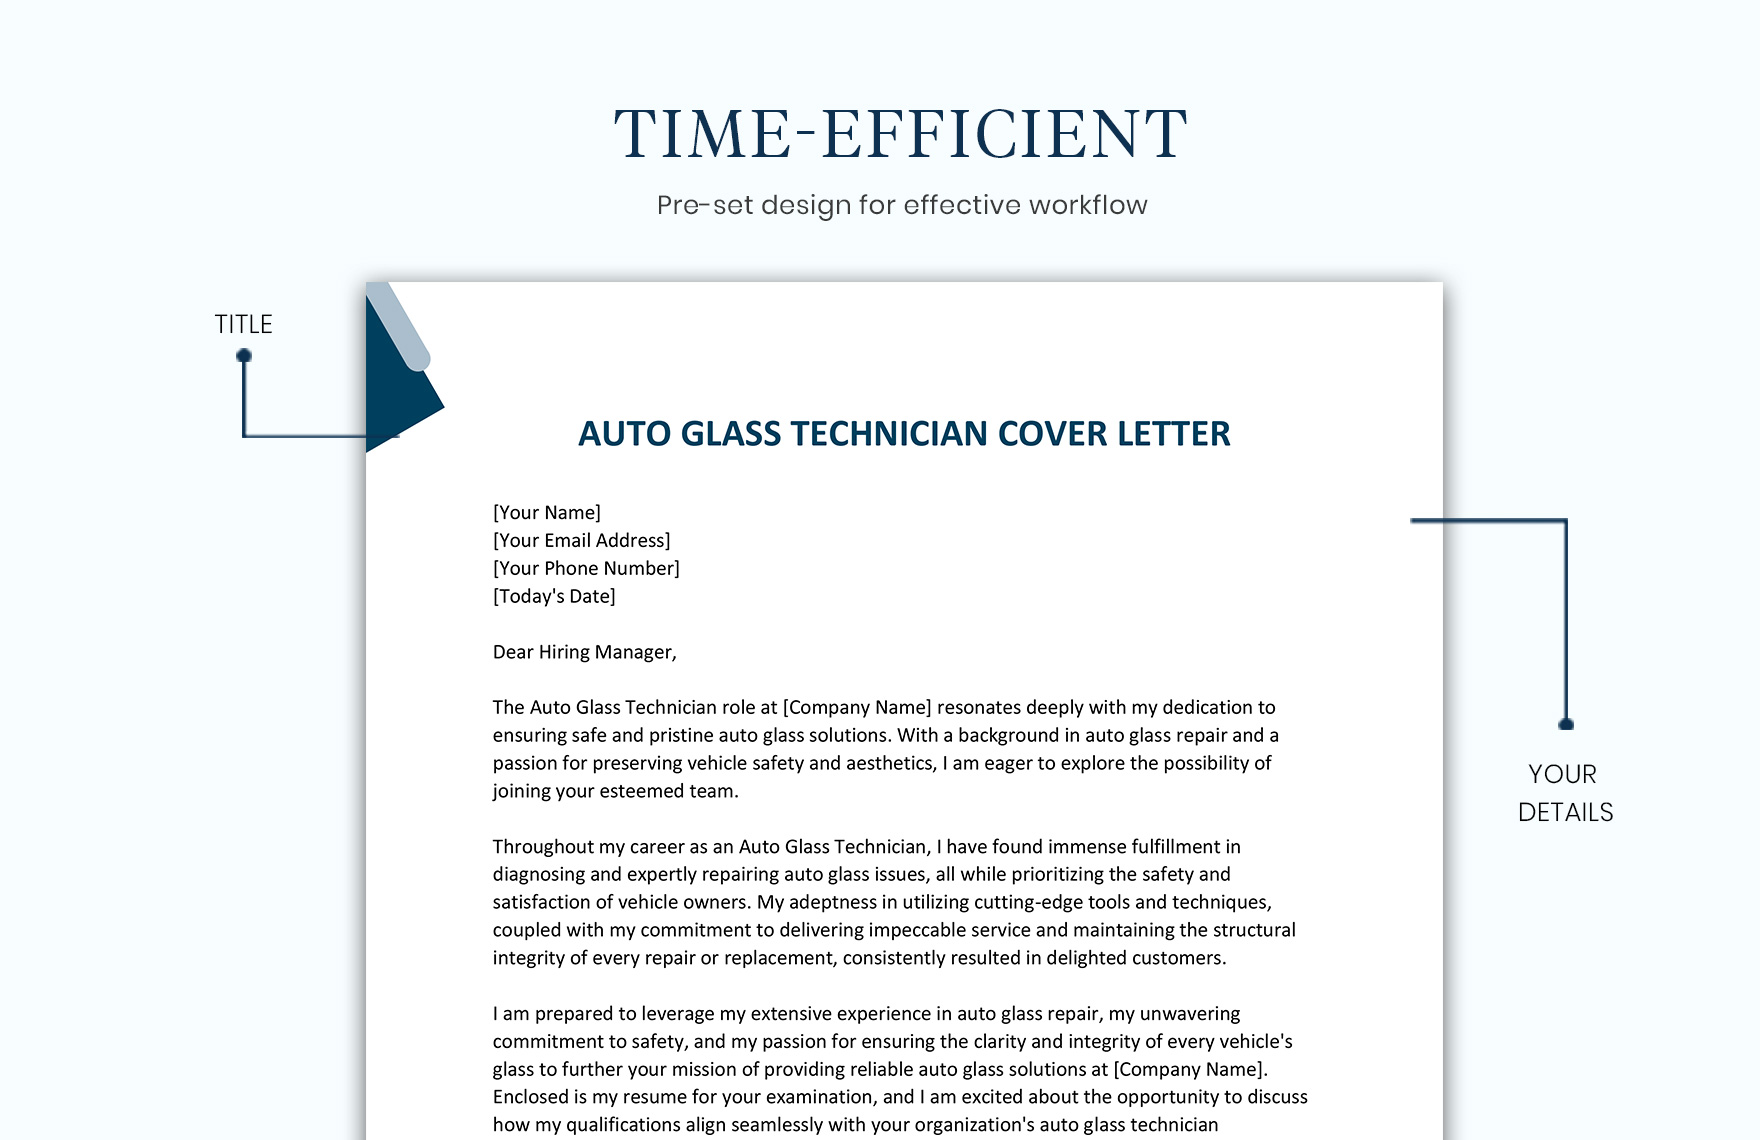 Auto Glass Technician Cover Letter